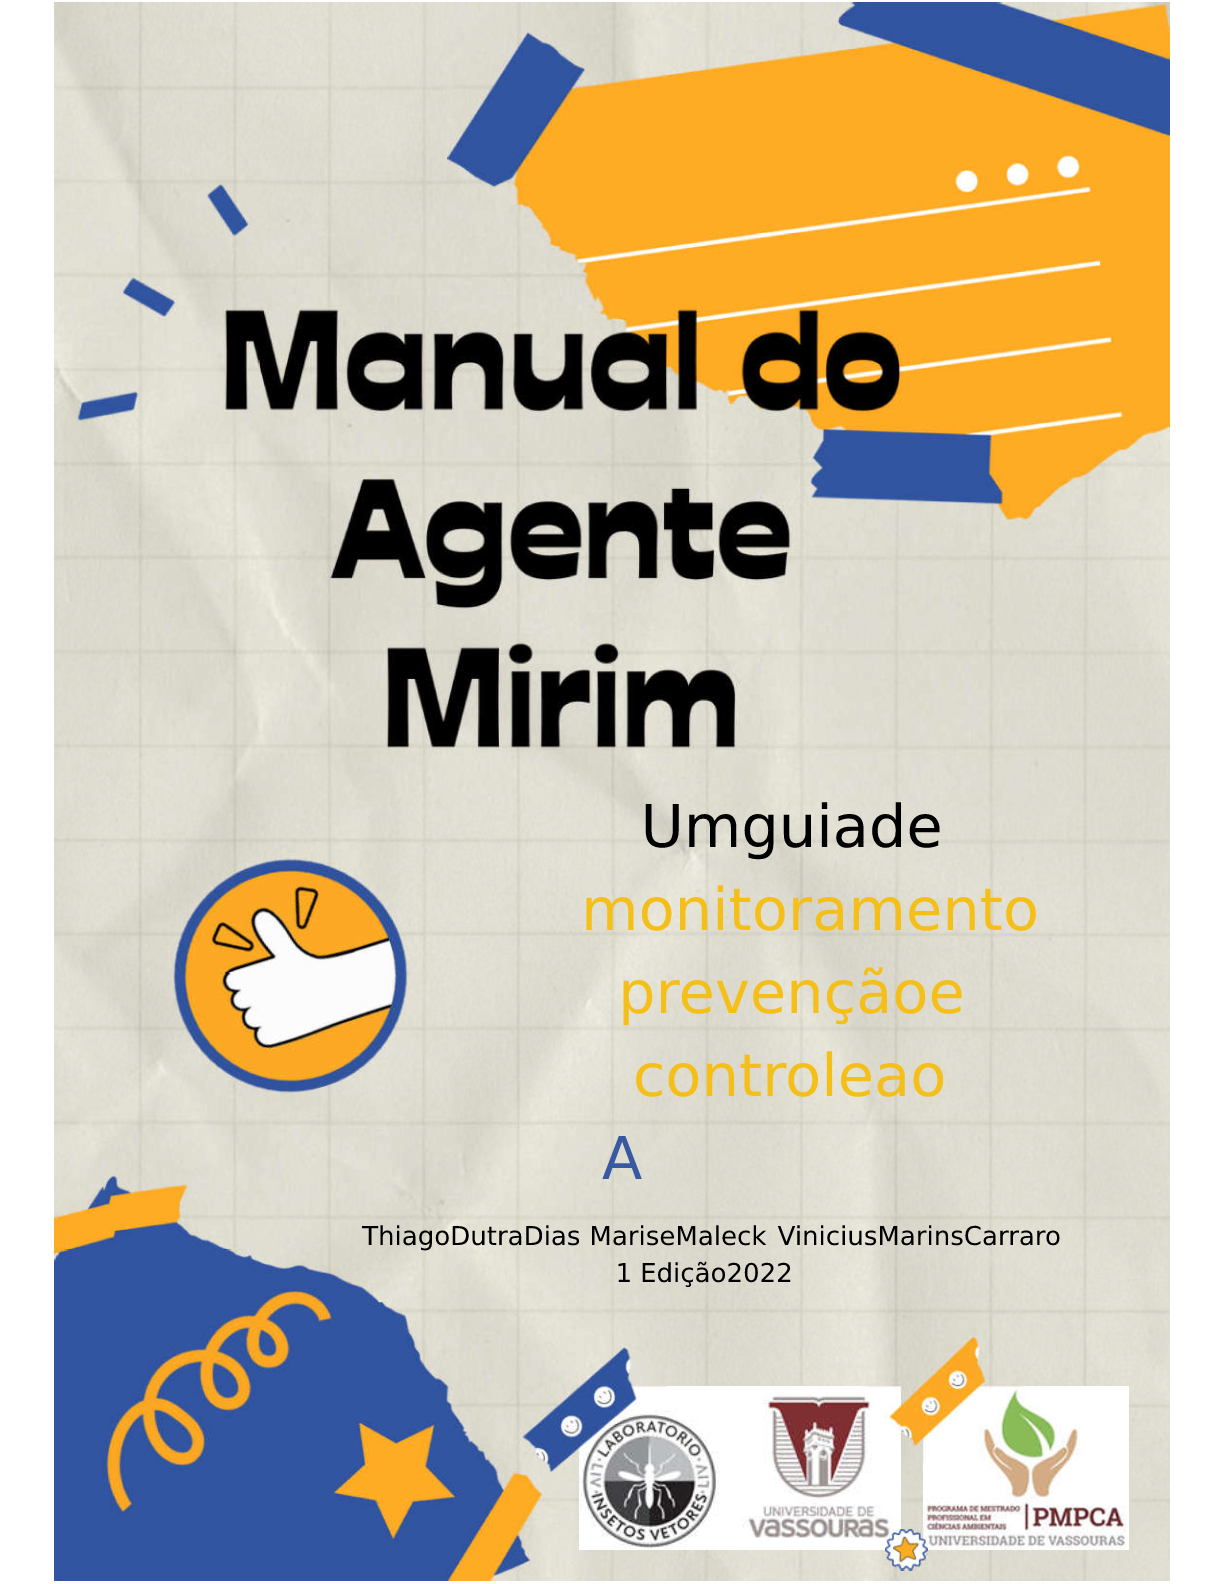 					View 2022: Manual do Agente Mirim:  Um guia de monitoramento, prevenção e controle ao Aedes aegypti 
				